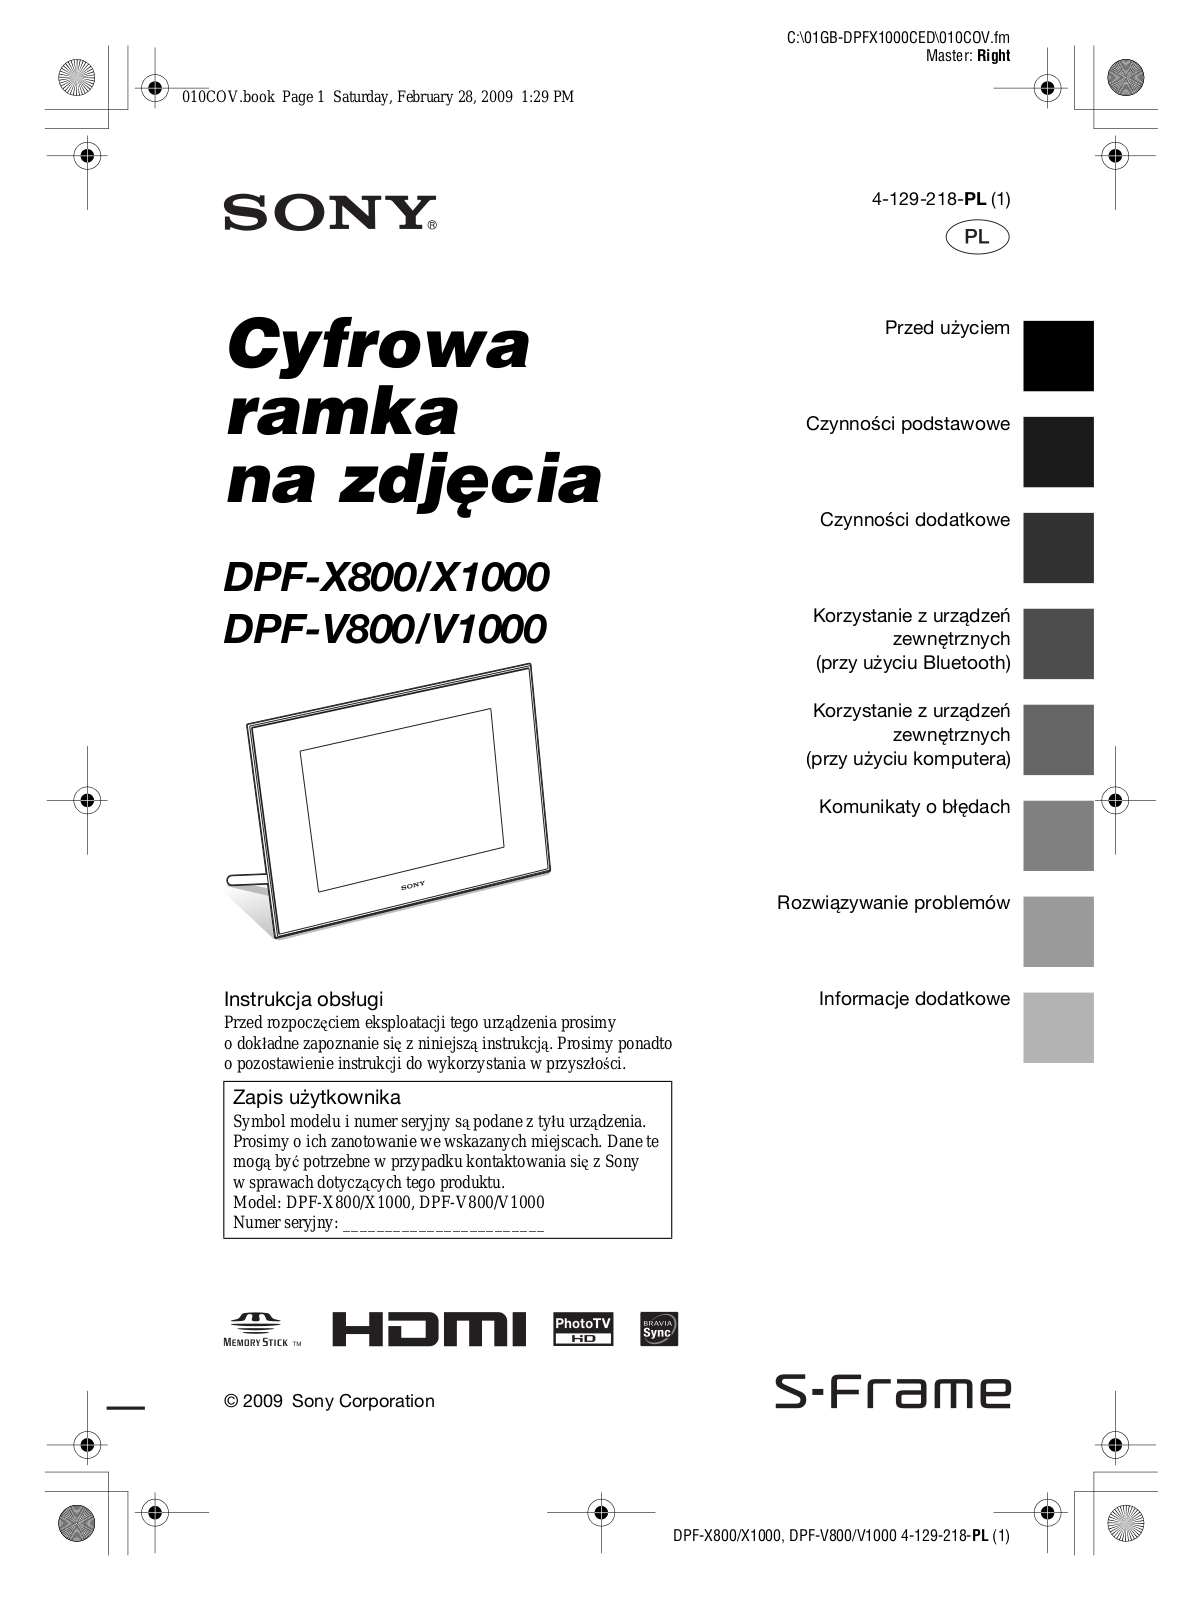 Sony DPF-X1000, DPF-X800, DPF-V1000, DPF-V800 User Manual